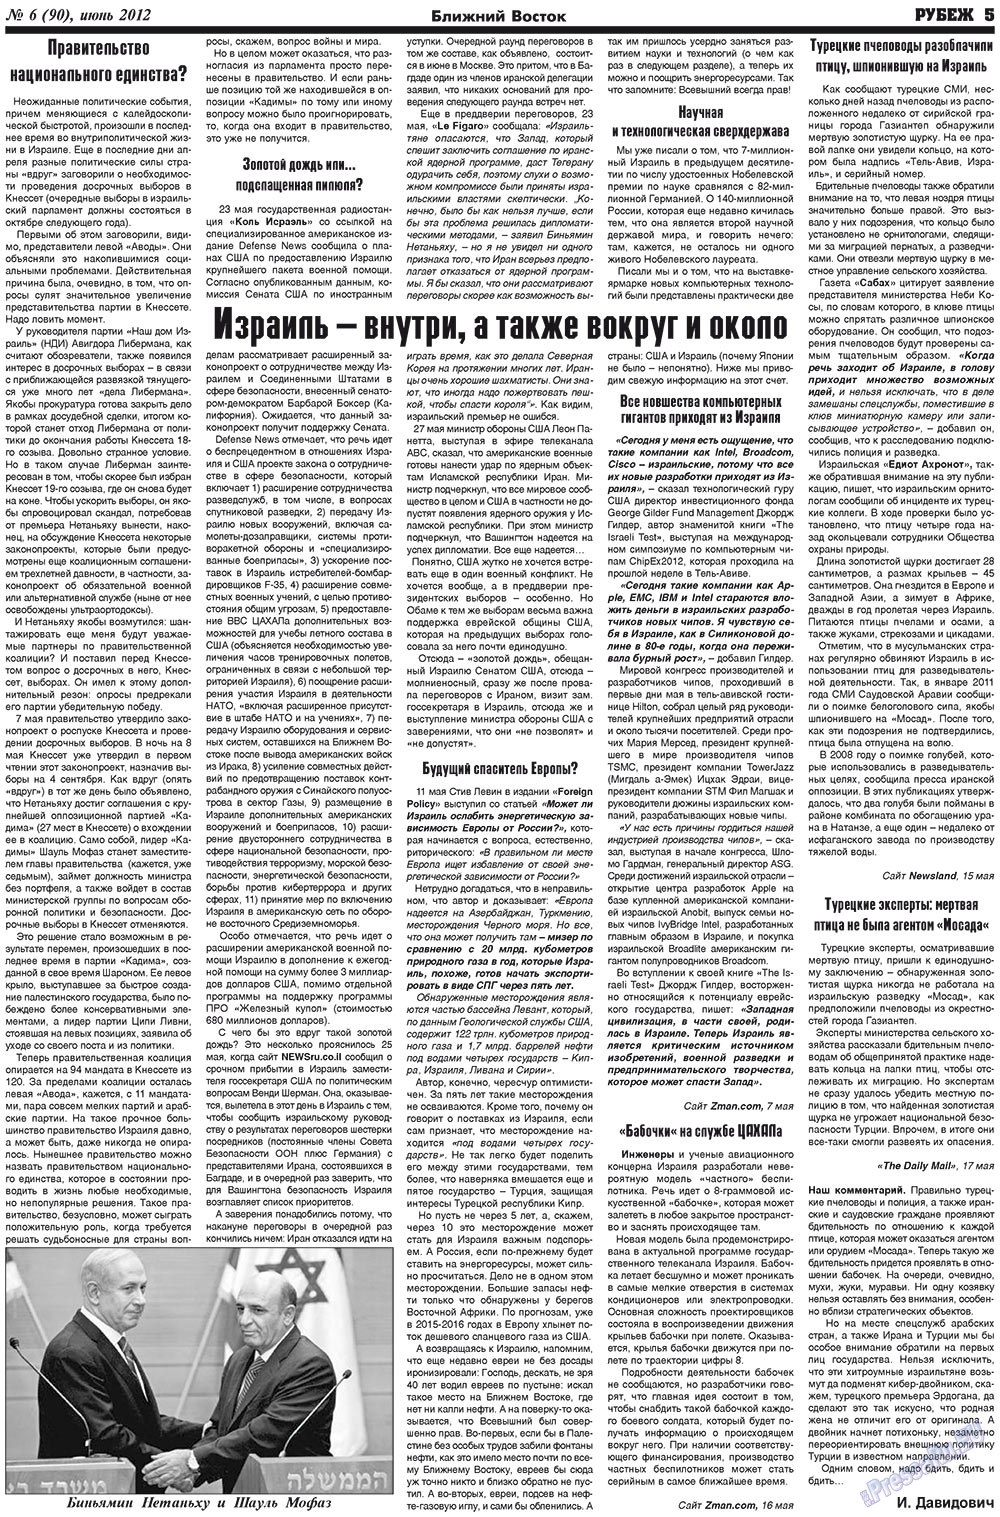 Рубеж (газета). 2012 год, номер 6, стр. 5